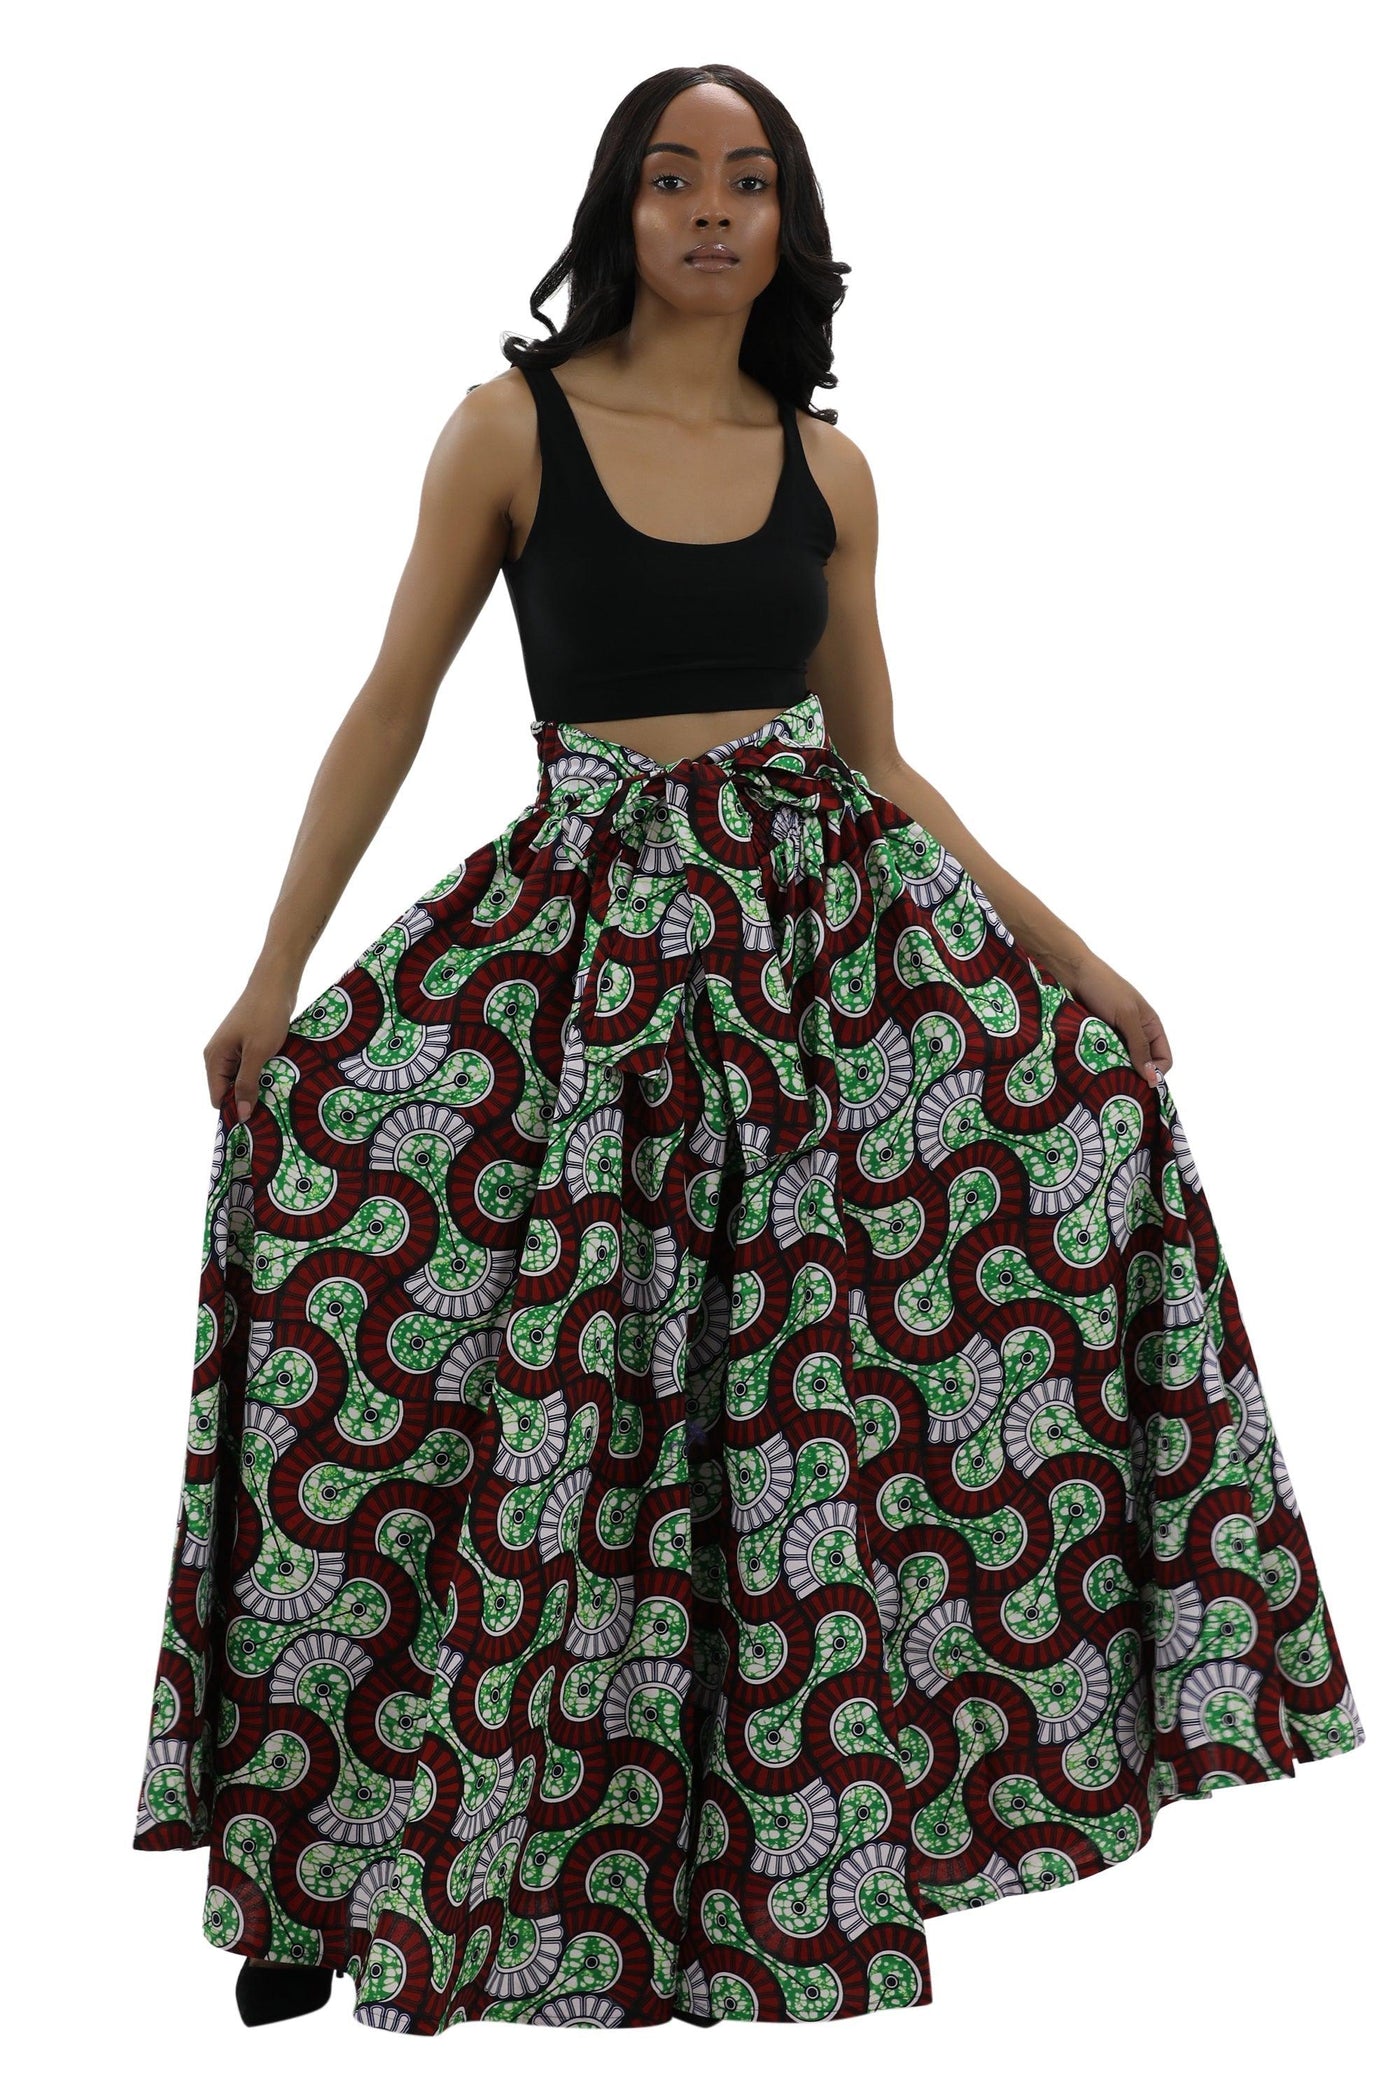 Long African Print Maxi Skirt Elastic Waist Ankara Fashion  - Advance Apparels Inc